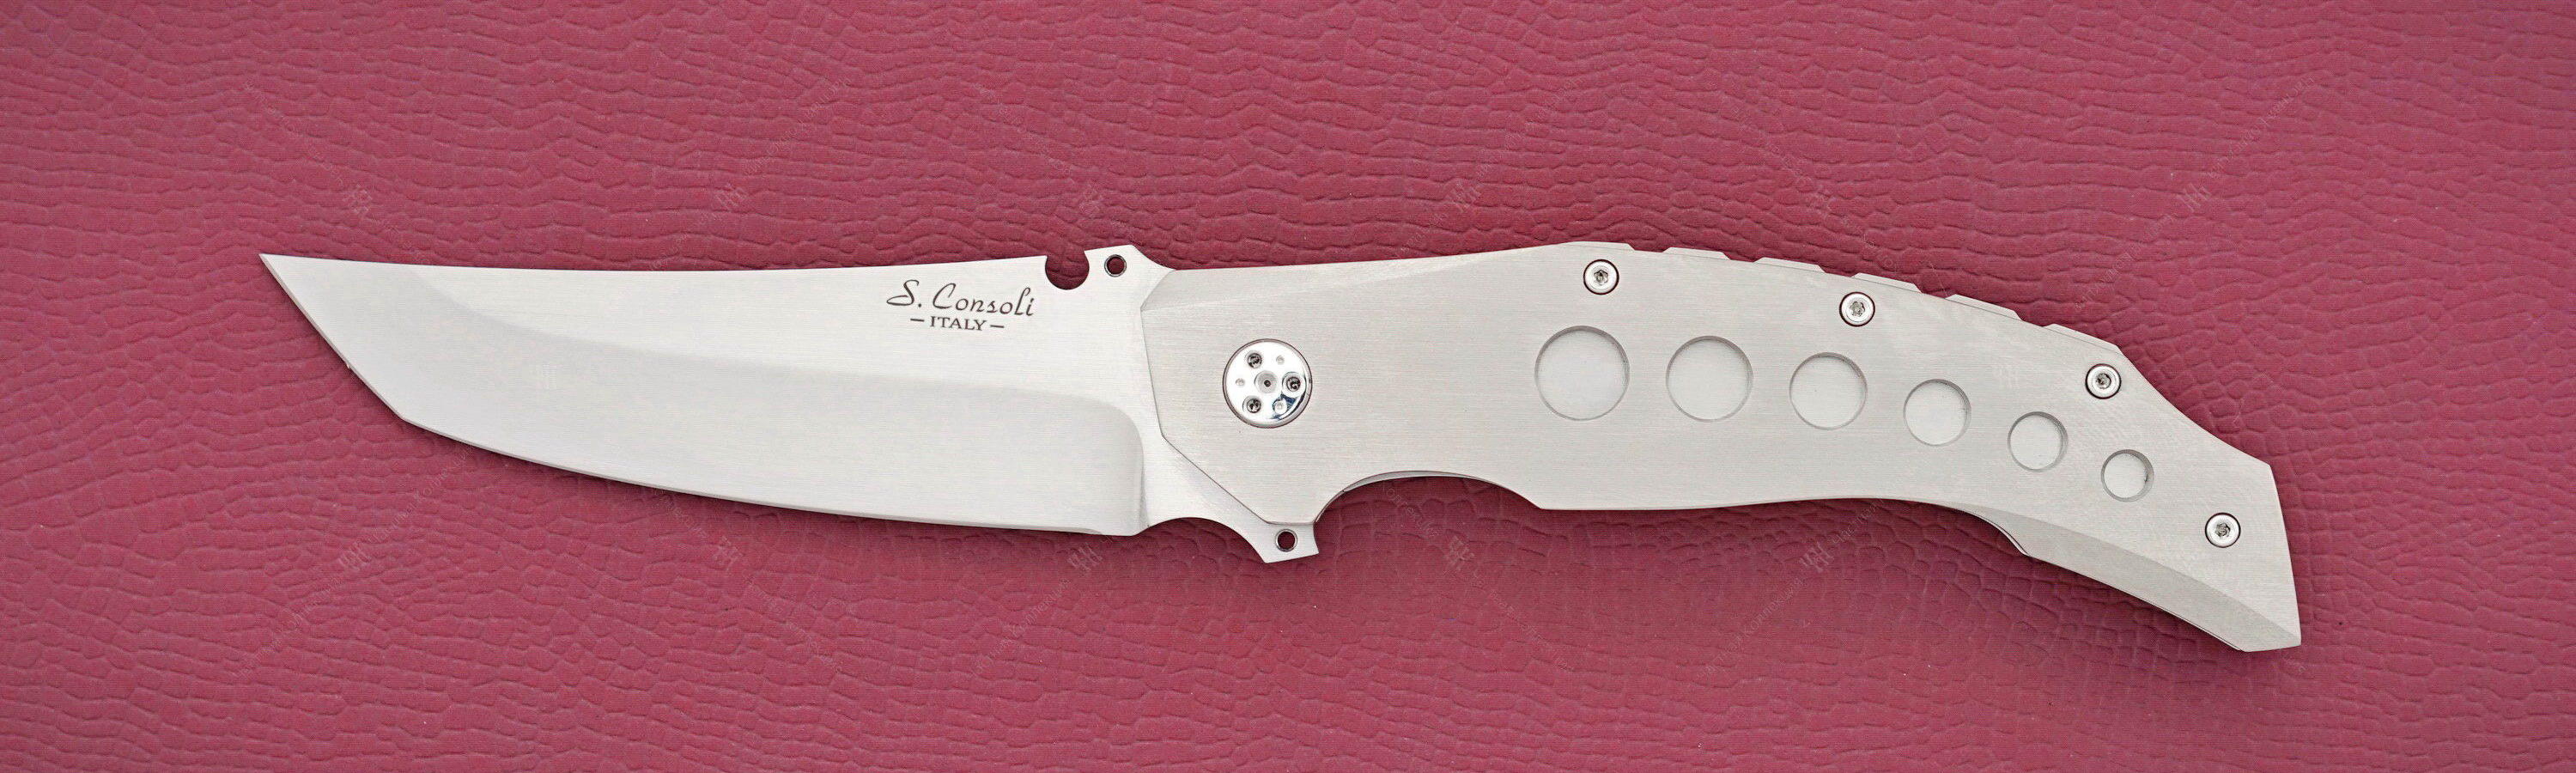 Sergio Consoli knife N300 titanium